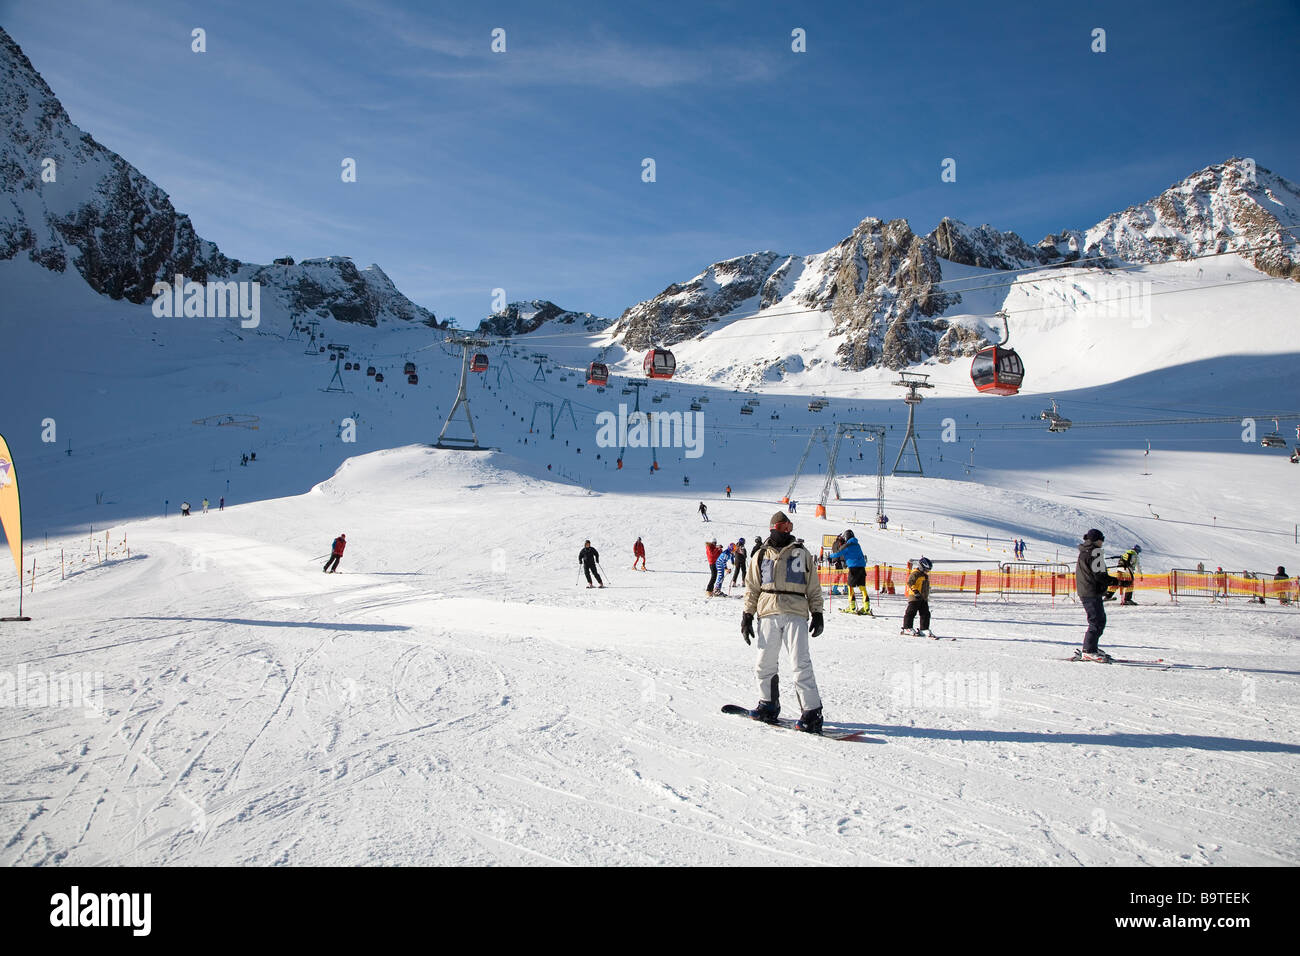 The Stubaier Gletscher Near Innsbruck Austria Stubaier Glacier Snowboarder in the foreground Stock Photo